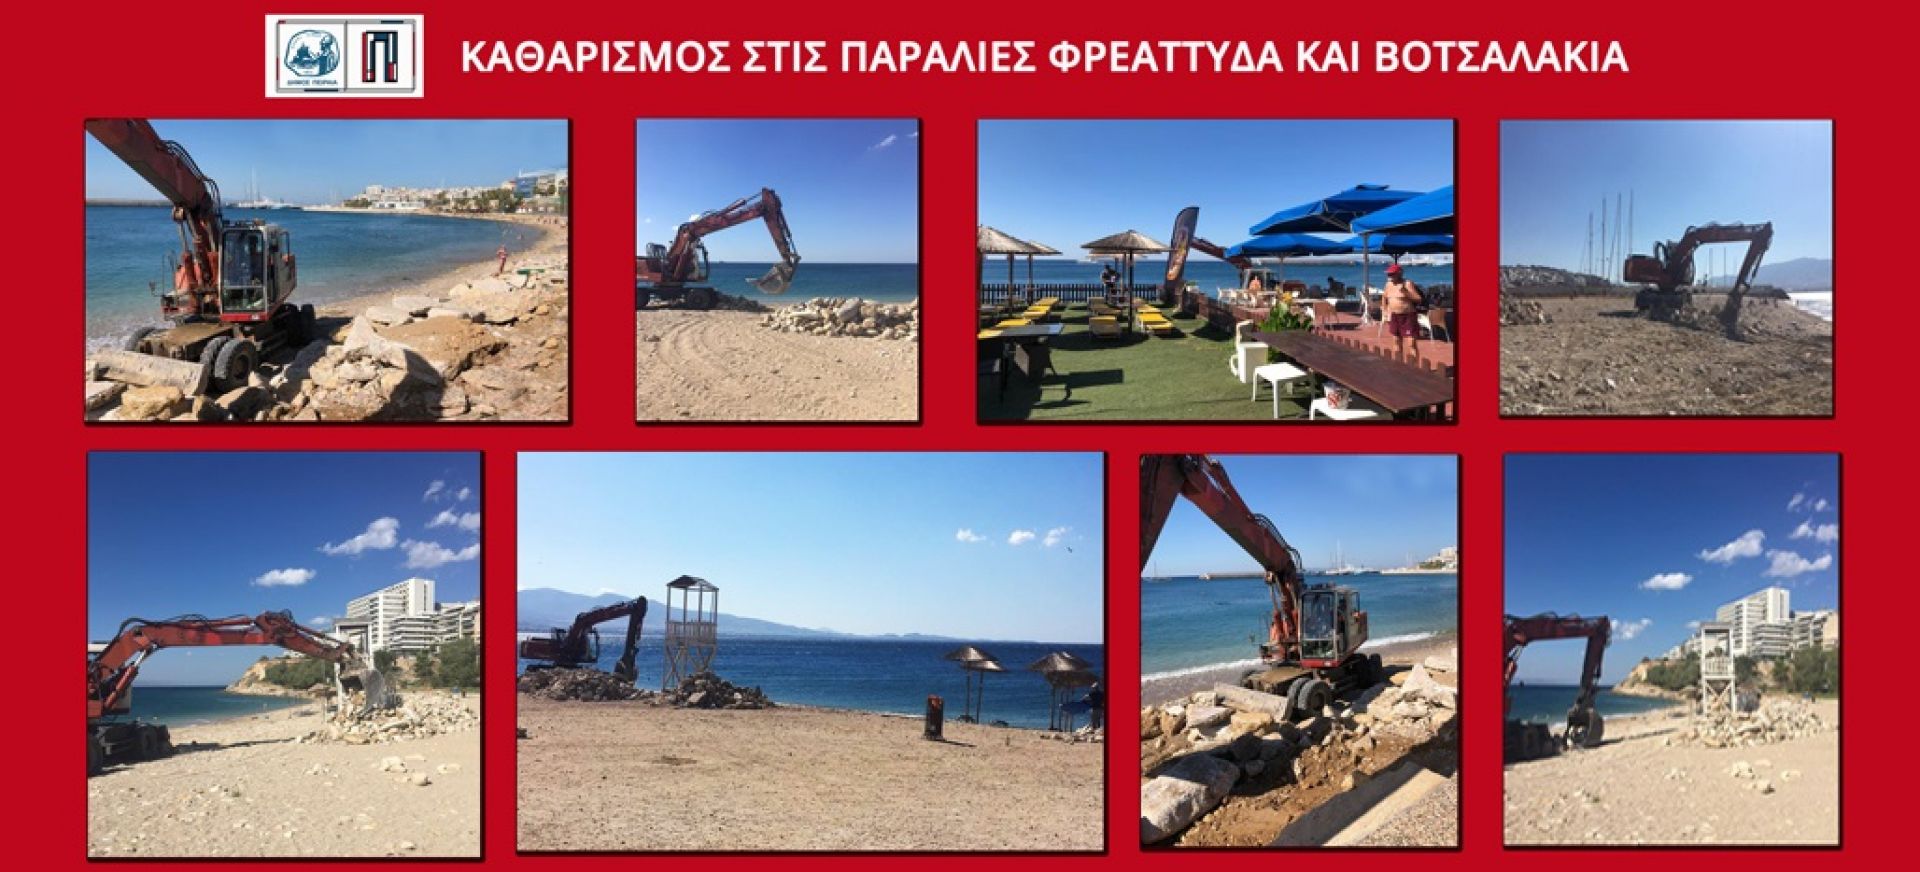 Πειραιάς: Εργασίες καθαρισμού στις παραλίες Βοτσαλάκια και Φρεαττύδα